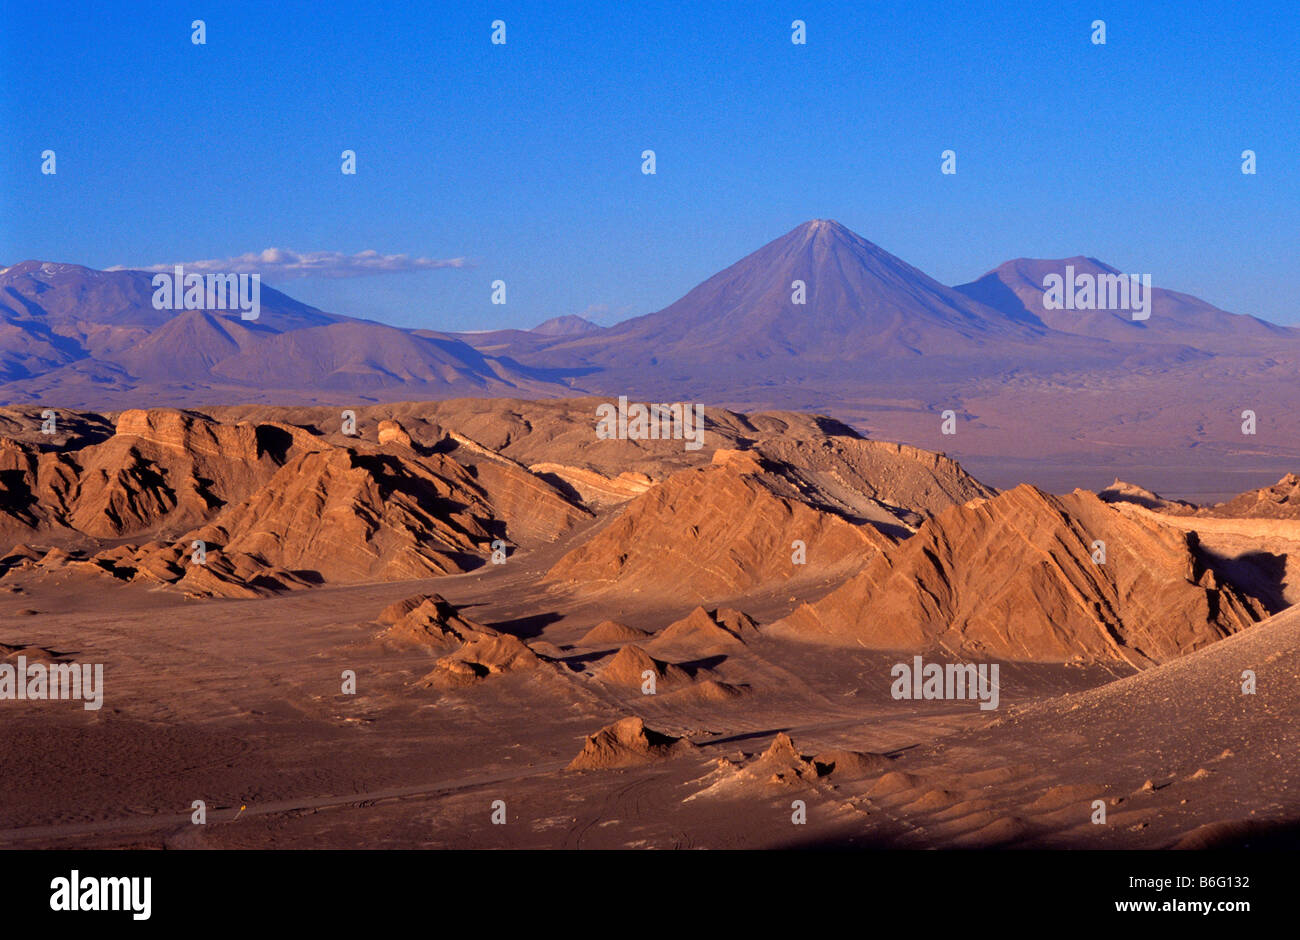 Valle de la Luna and the Licancabur volcano Atacama desert Chile Stock Photo